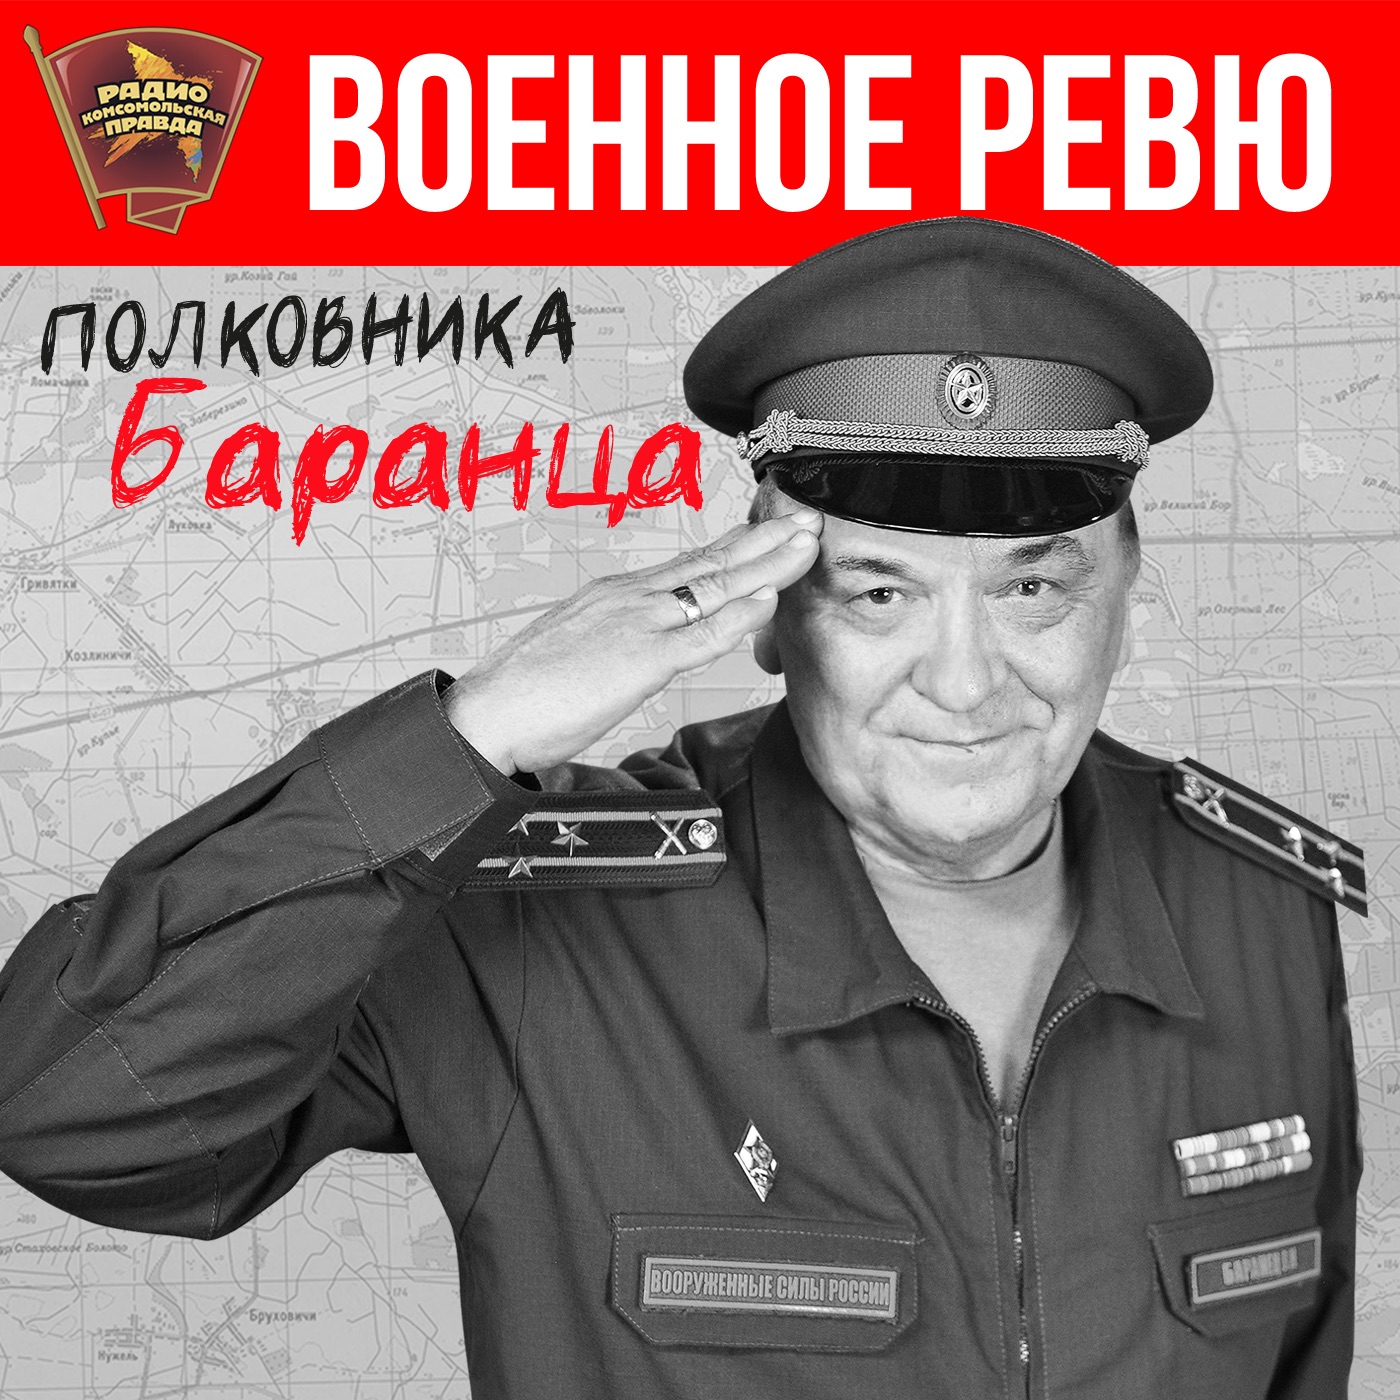 Комсомольская правда радио военное ревю слушать. Полковник Баранец Комсомольская правда.